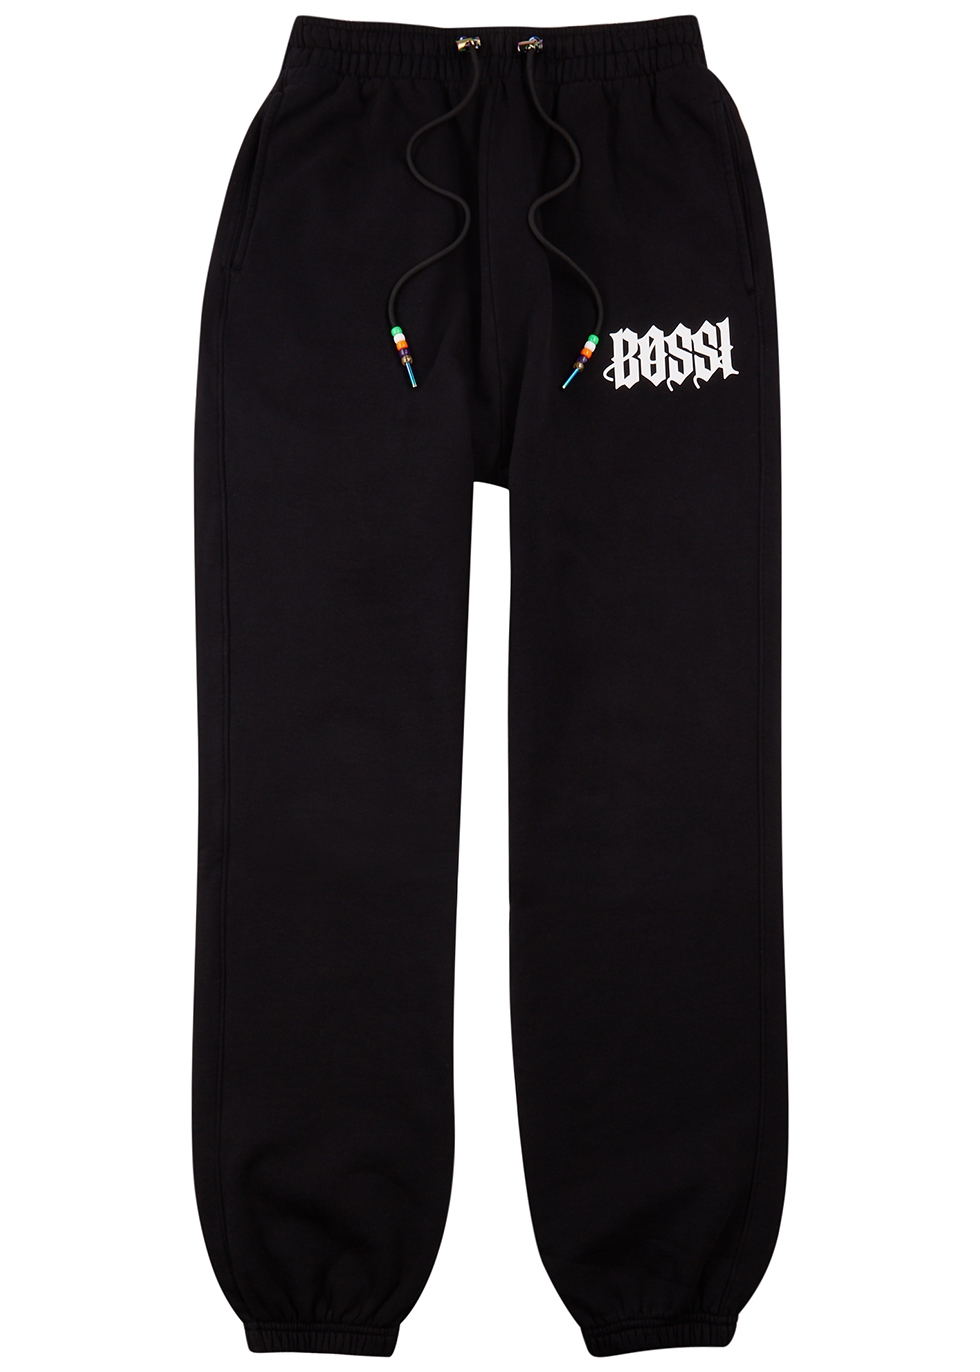 BOSSI Sportswear Black logo cotton sweatpants